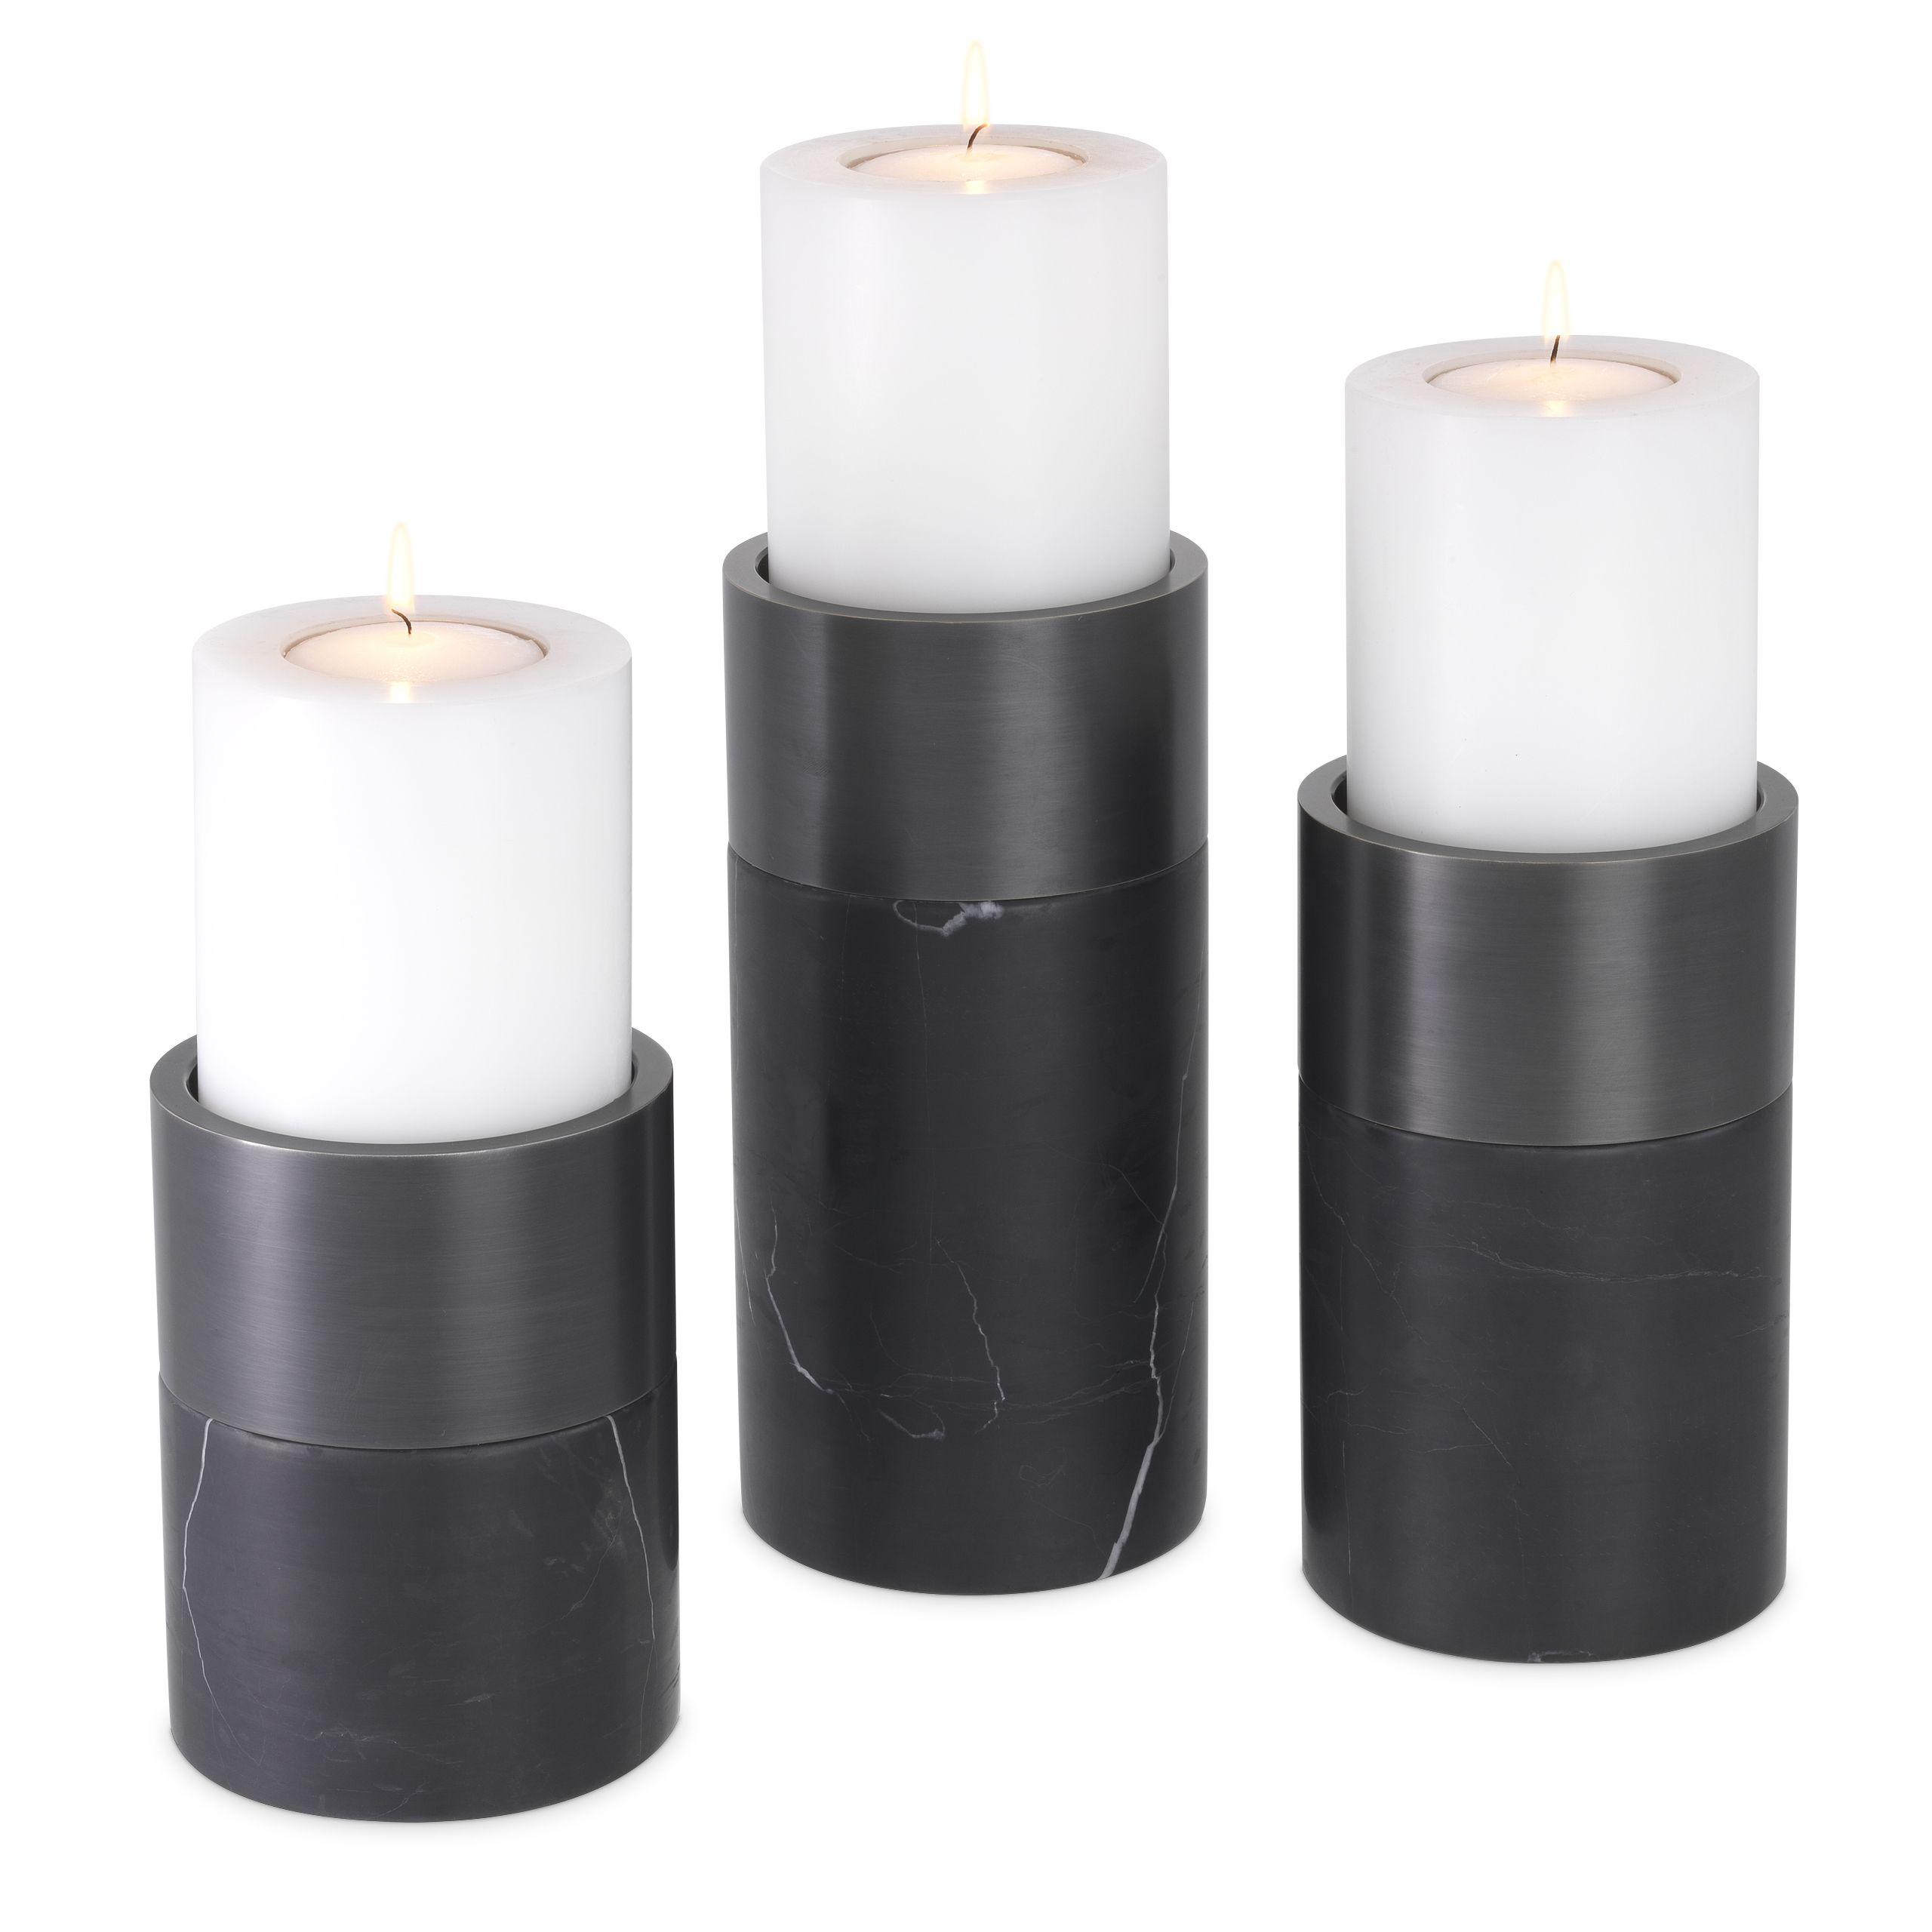 Купить Подсвечник Candle Holder Sierra set of 3 в интернет-магазине roooms.ru